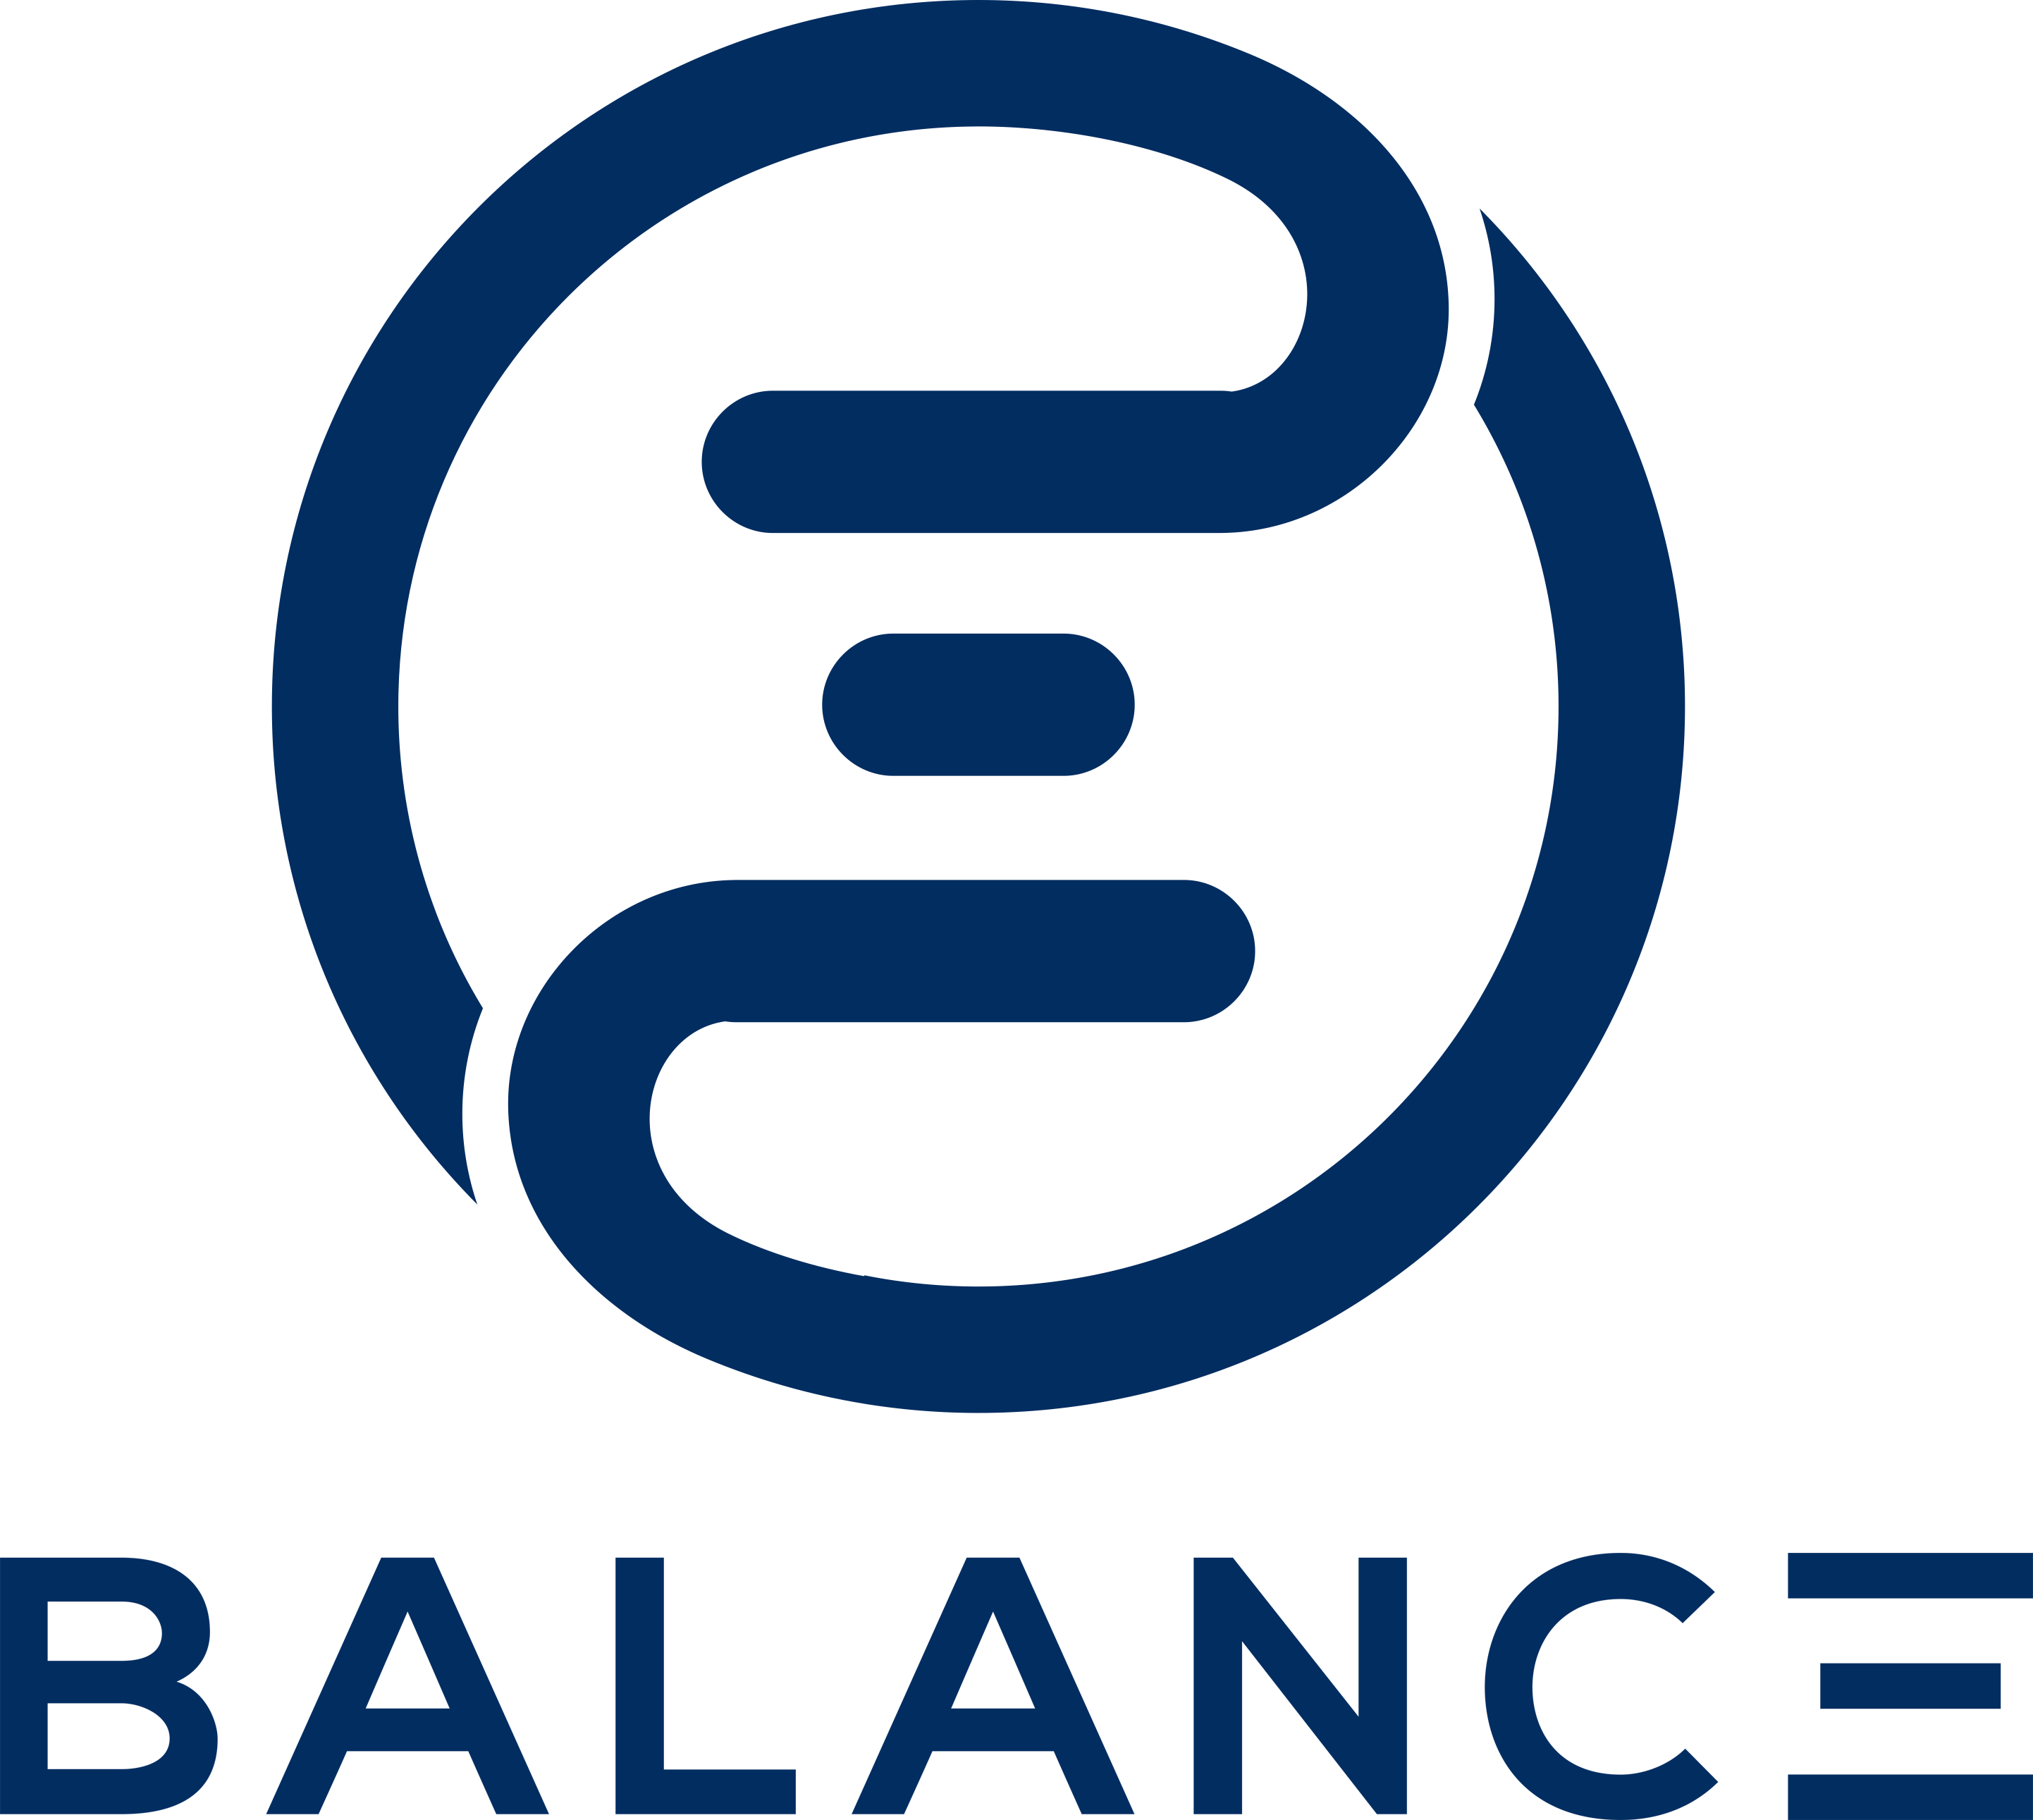 Balanc3_logo.PNG